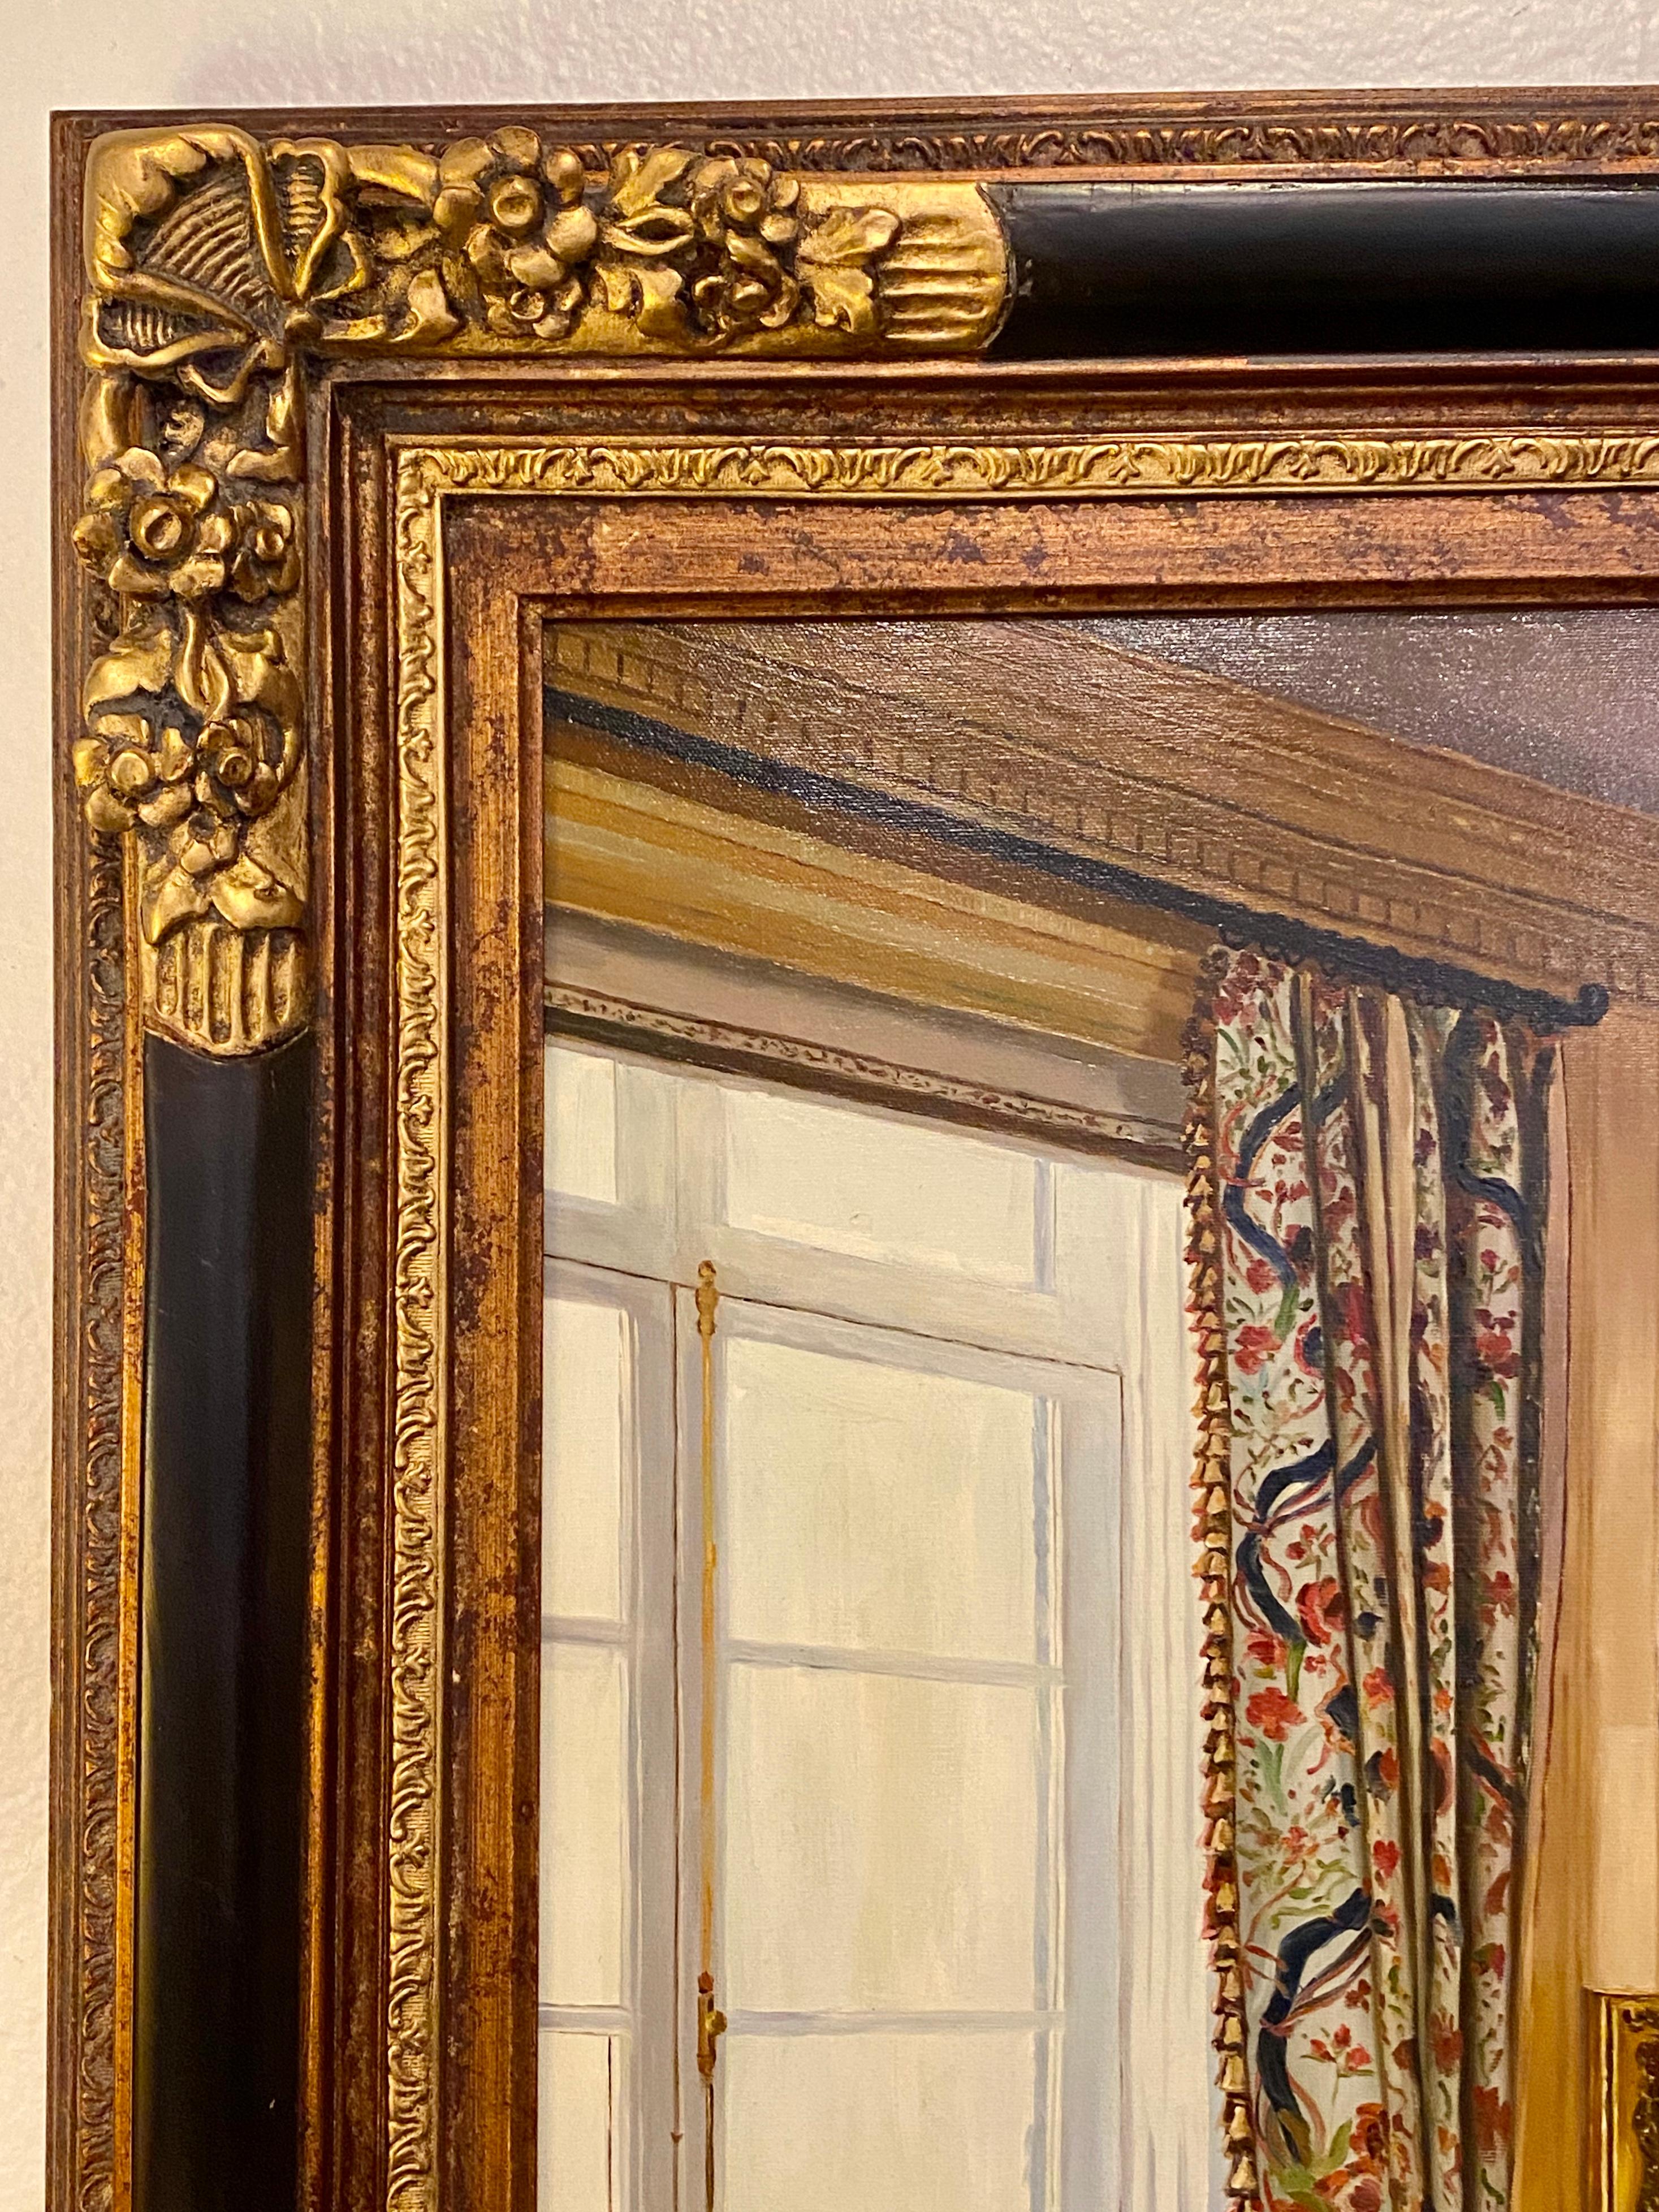 Modern Oil on Canvas Interior Home Design in a Custom Frame, Signed Feldman